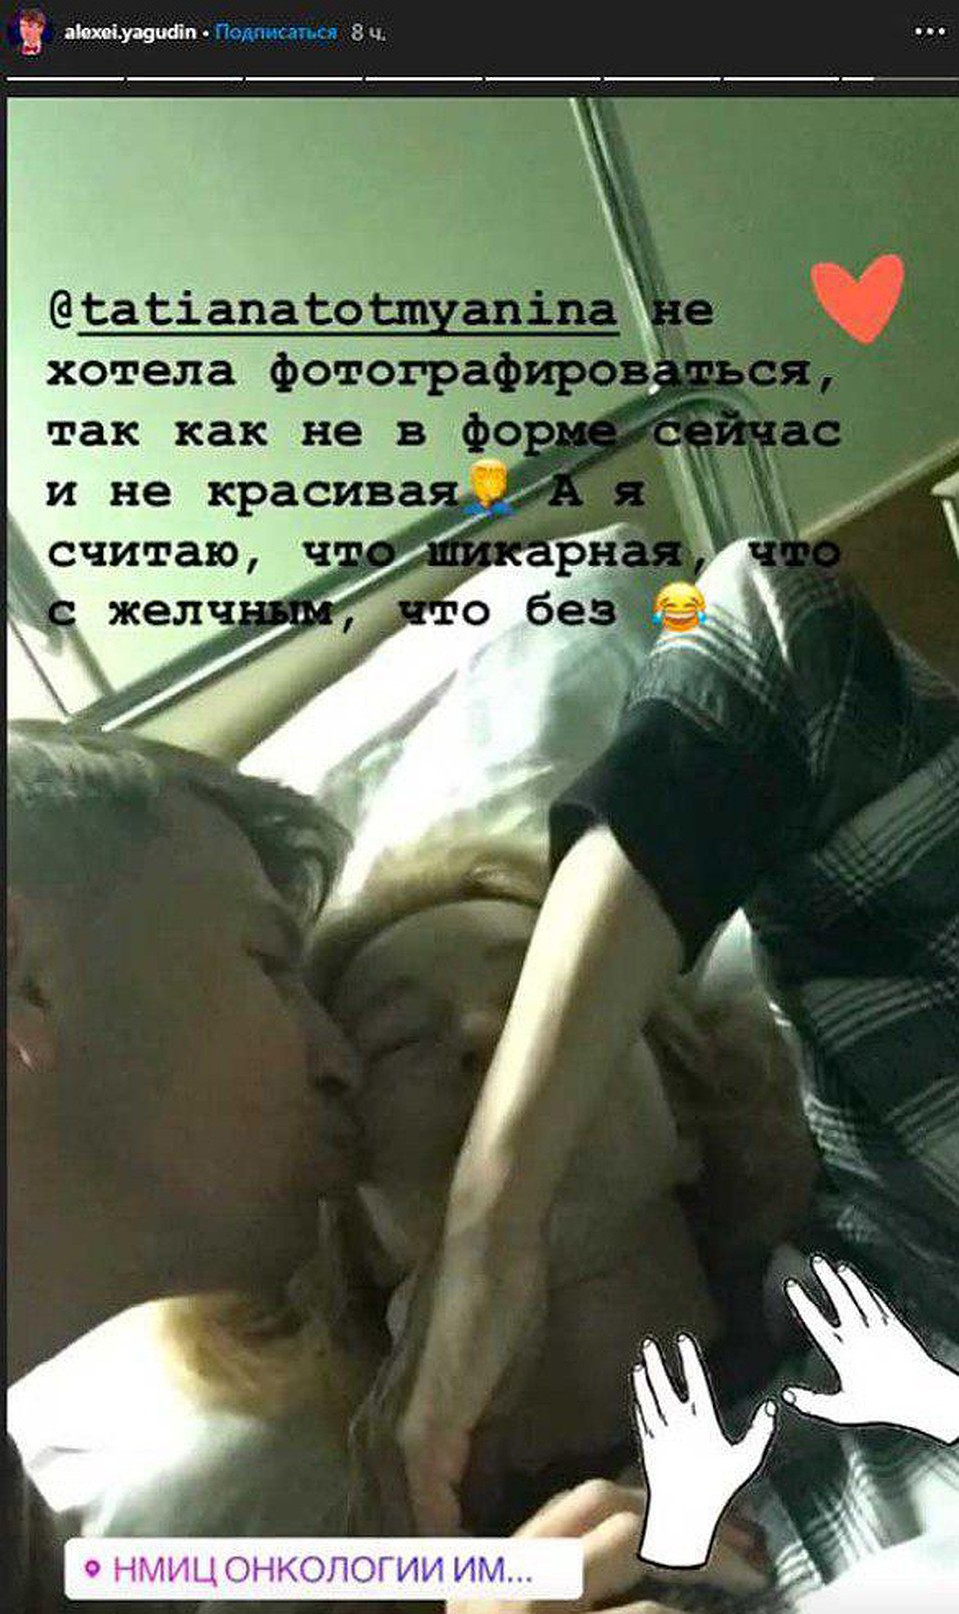 Алексей Ягудин навестил свою супругу Татьяну Тотьмянину в онкоцентре. Фото: Личная страничка героя публикации в соцсети